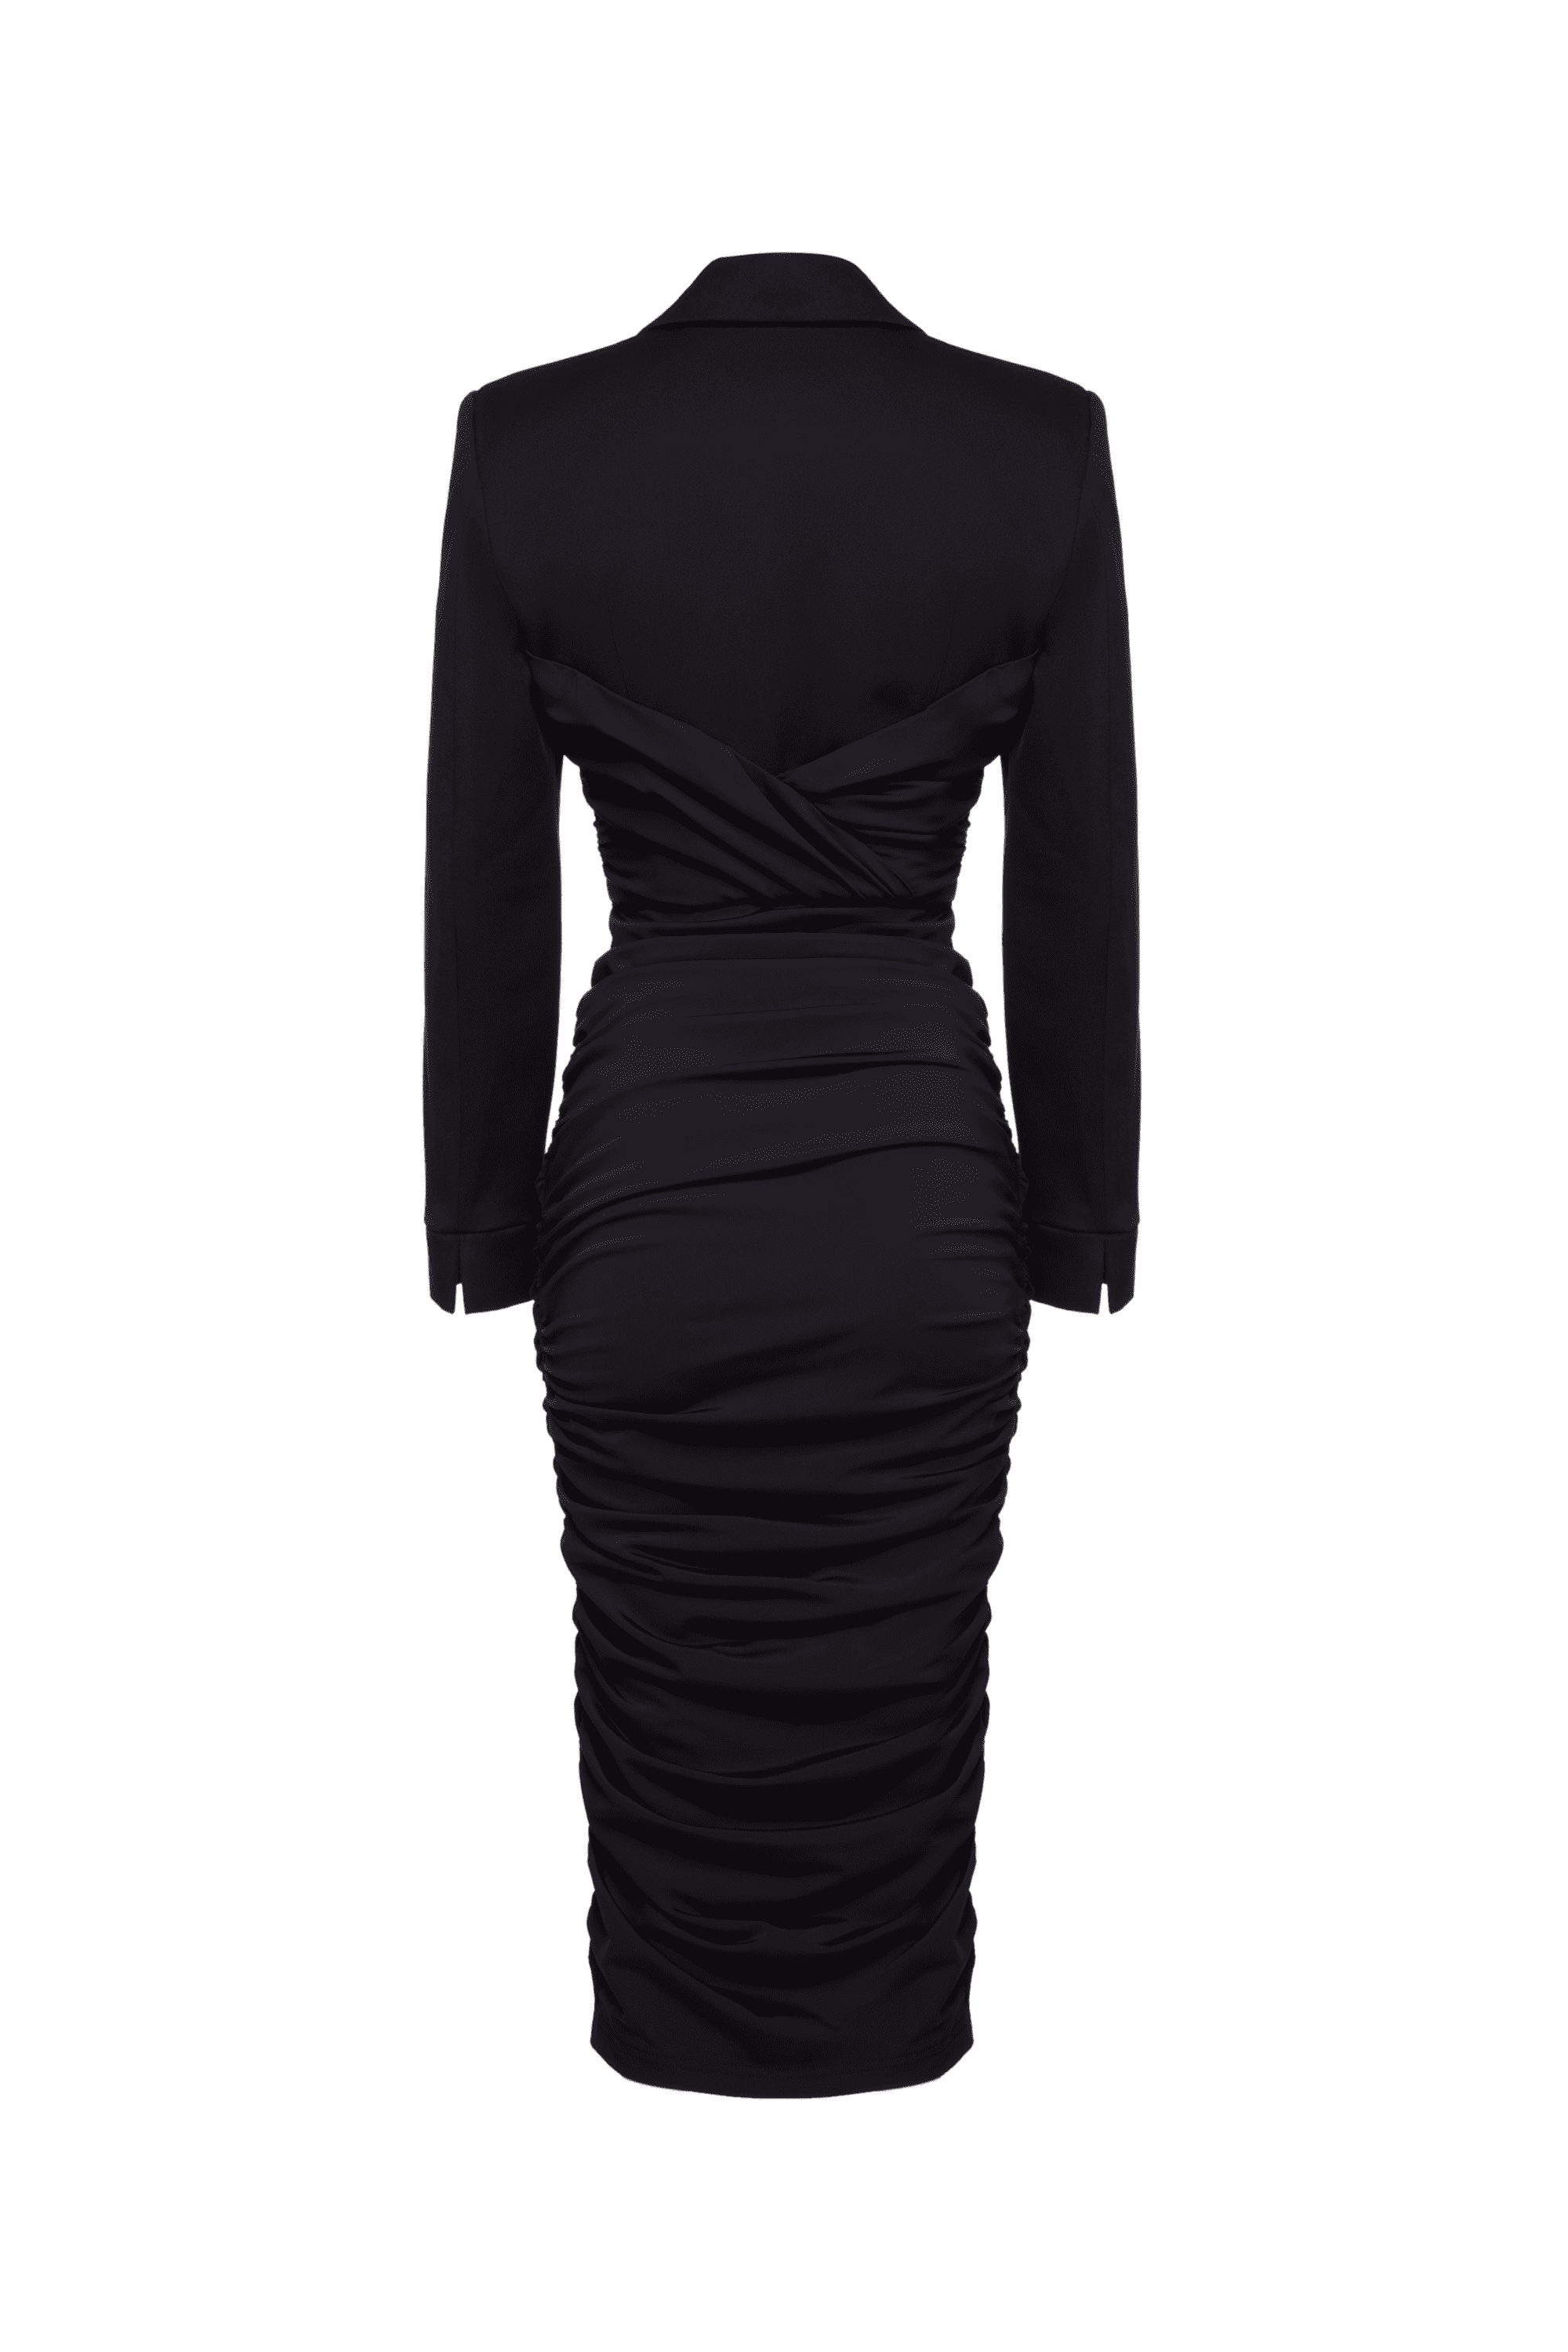 Black Fatal dress